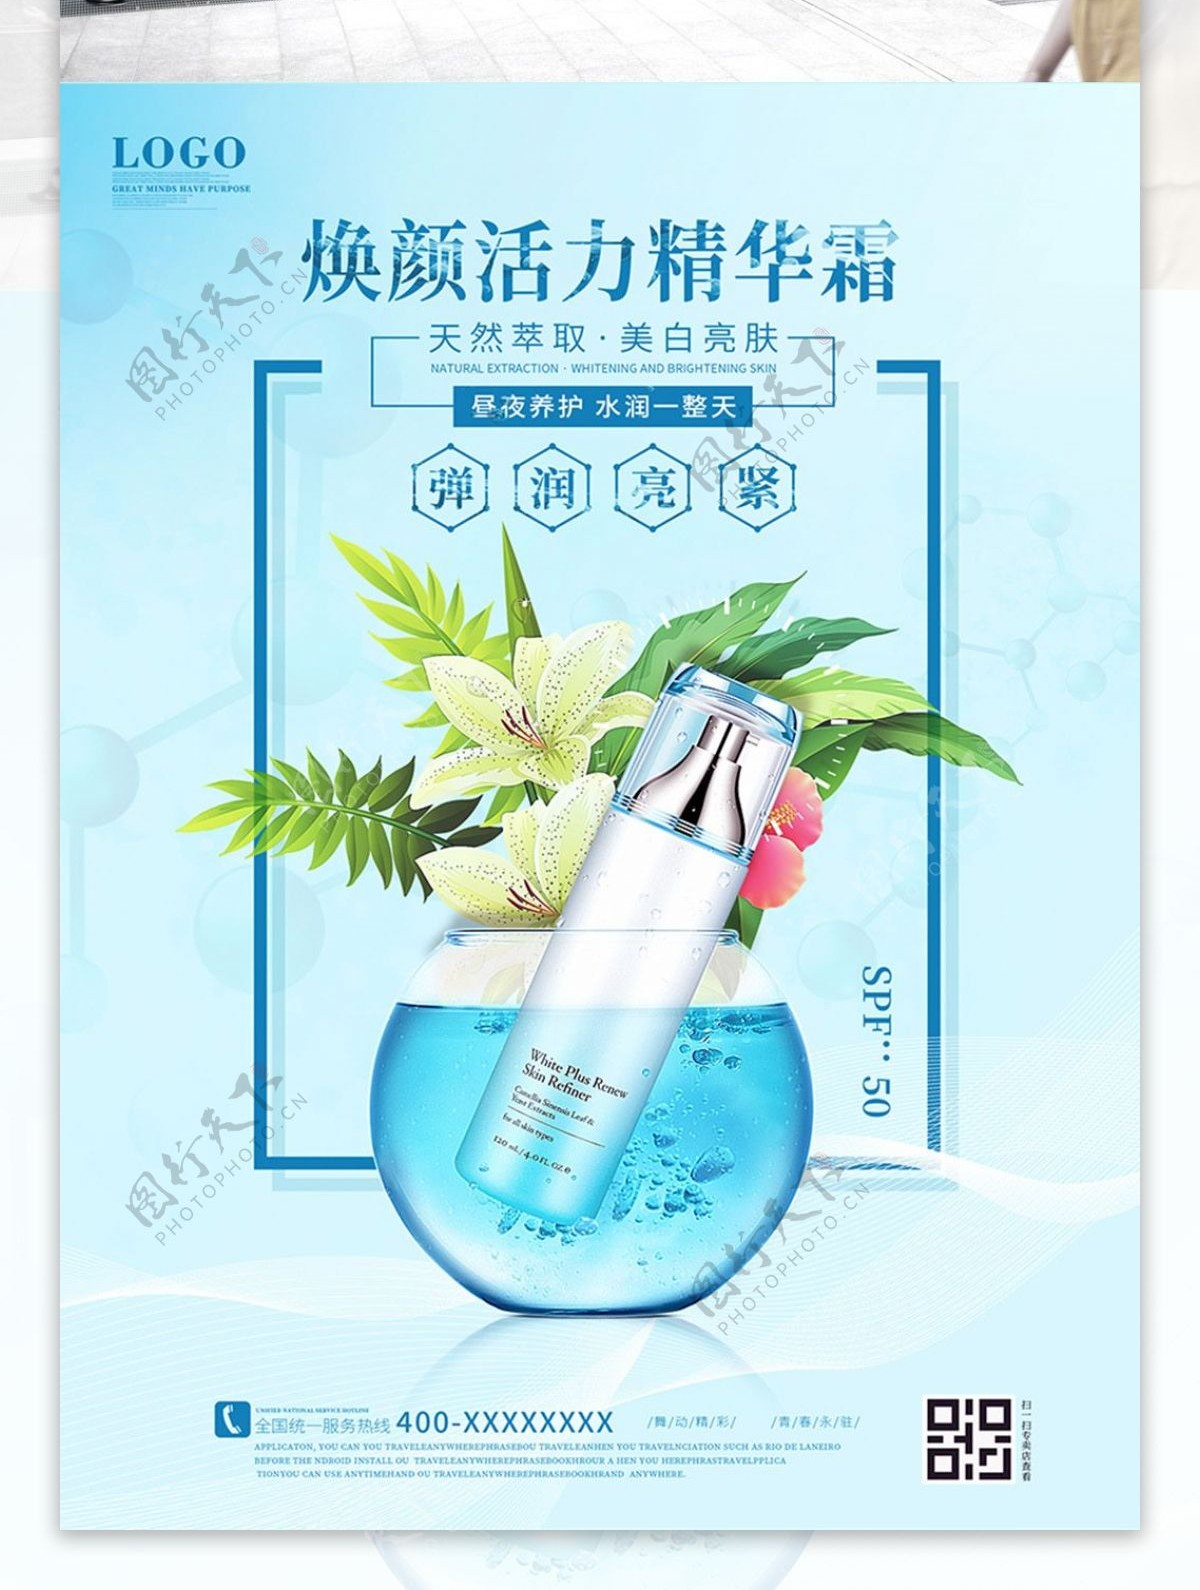 蓝色玻璃瓶化妆品护肤品宣传广告海报